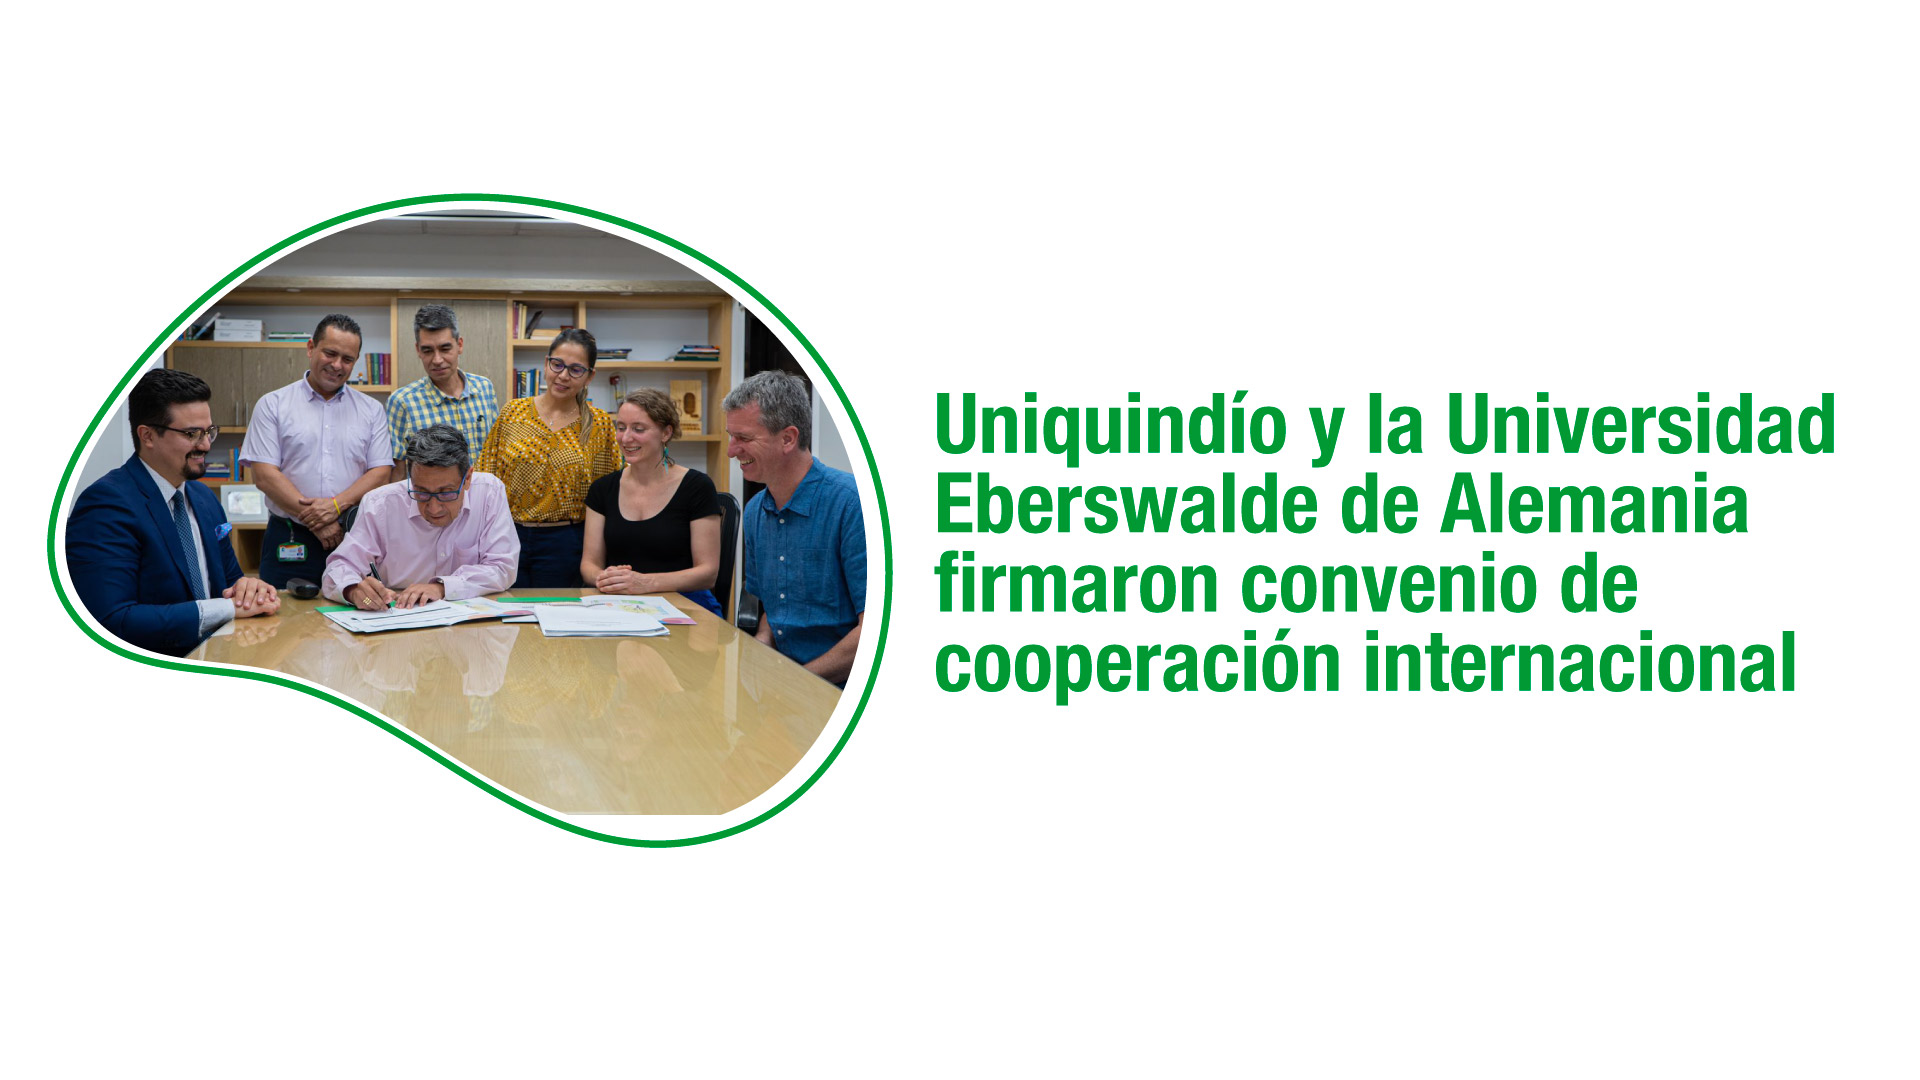 Uniquindío y la Universidad Eberswalde de Alemania firmaron convenio de cooperación internacional